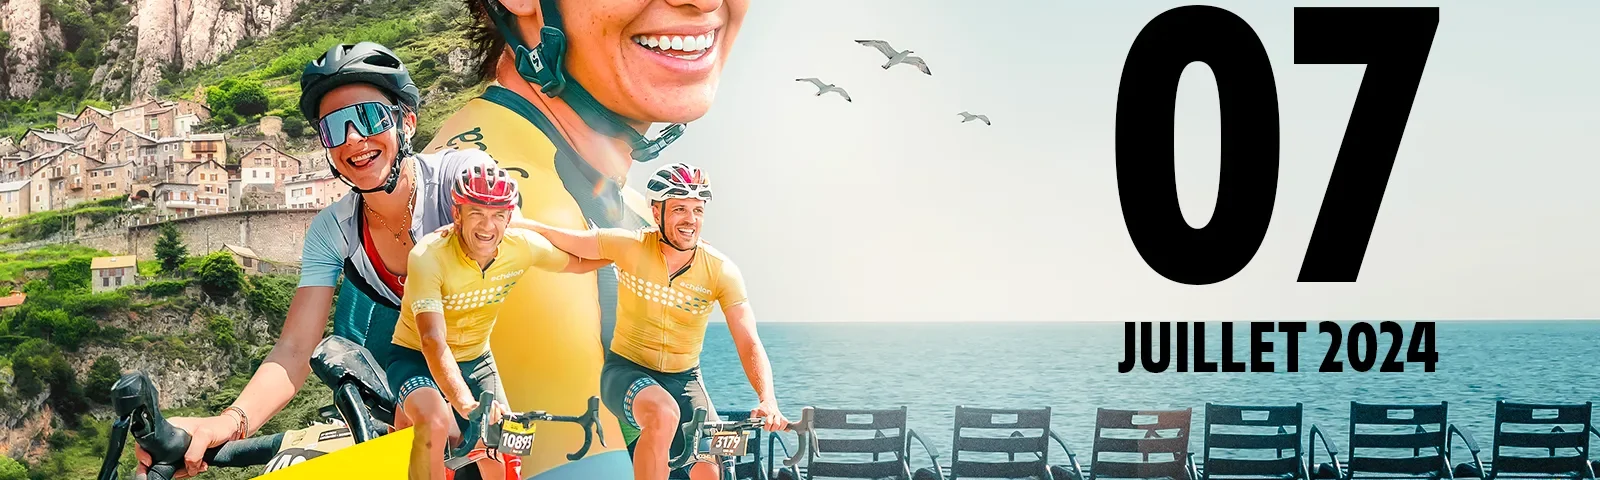 Affiche officielle de l'Étape du Tour de France